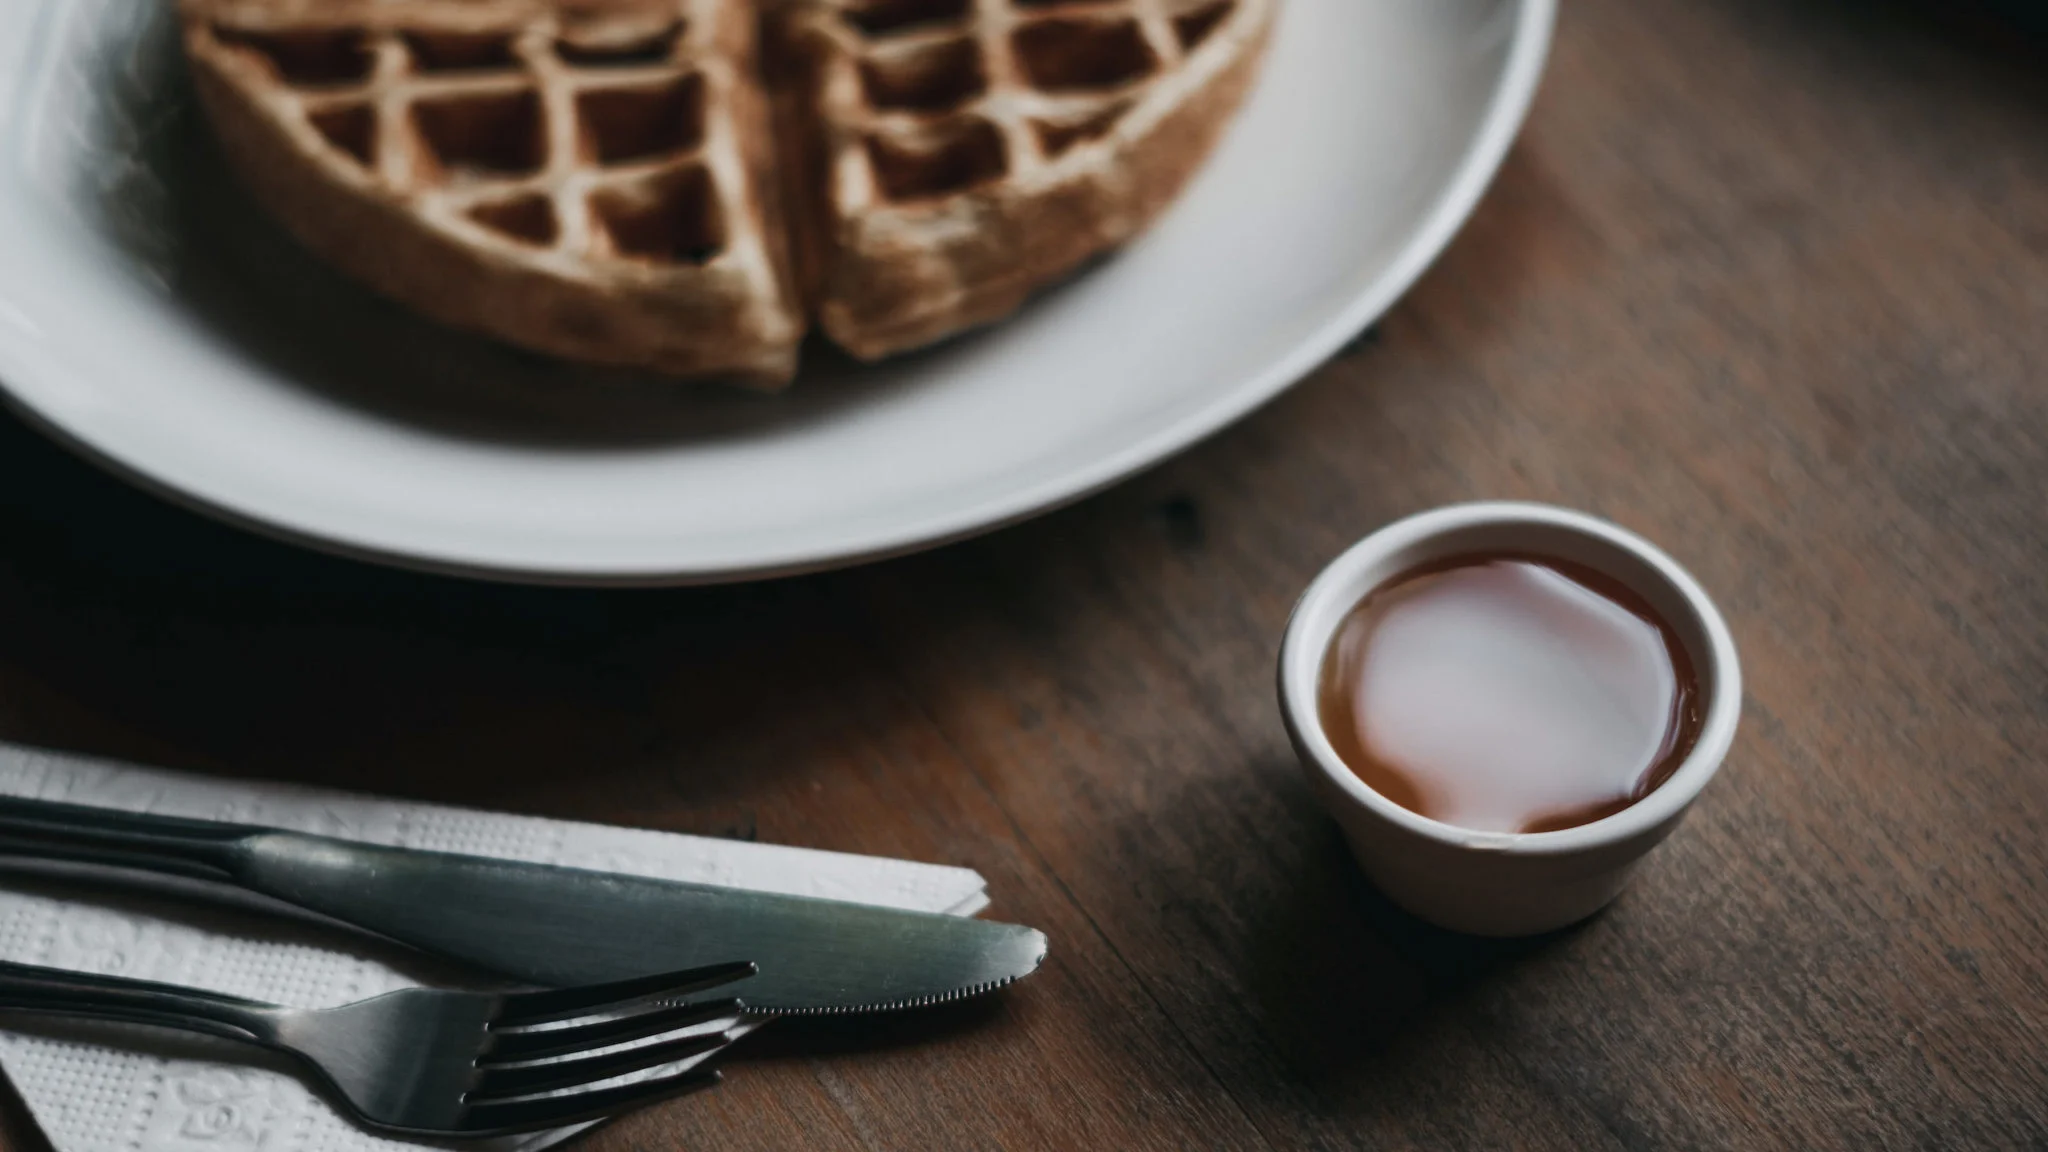 Pide estos desayunos para apoyar a la industria restaurantera y musical